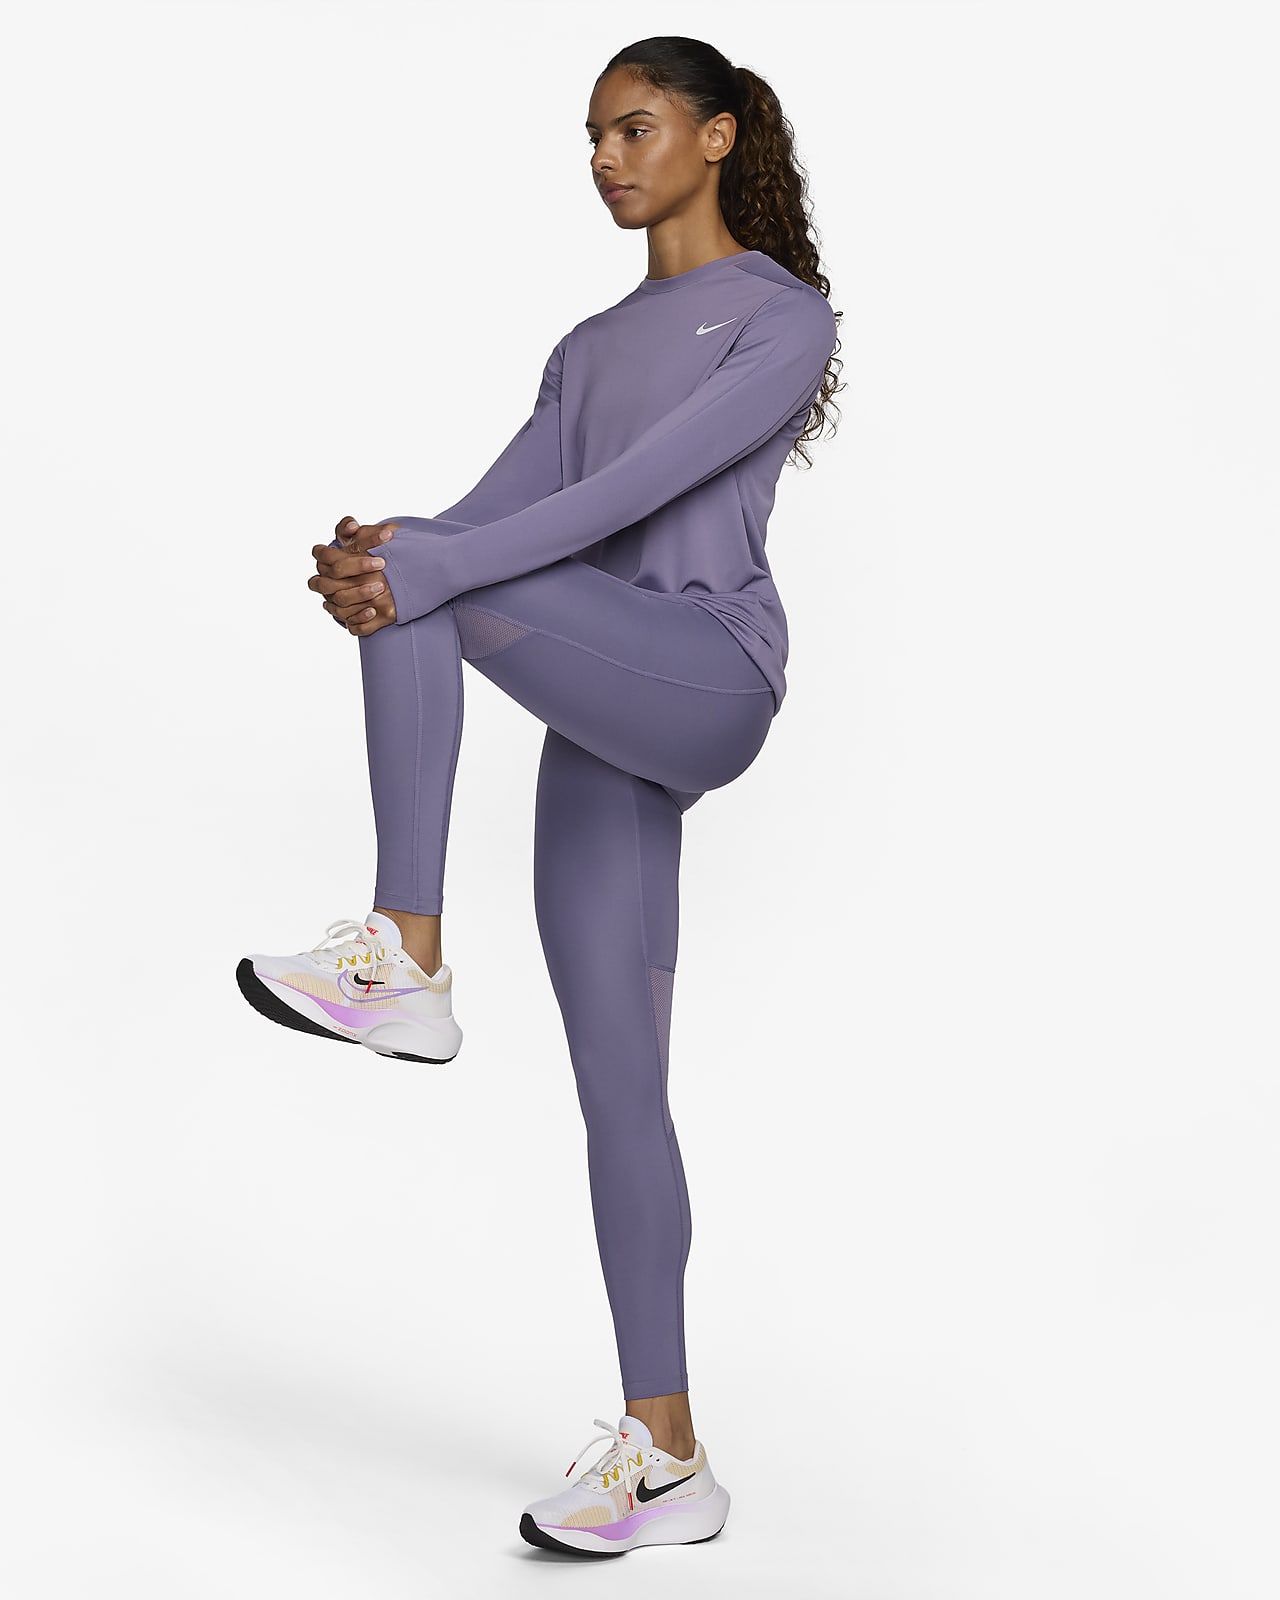 Nike Epic Luxe Women's Mid-Rise 7/8 Pocket Running Leggings. Nike.com